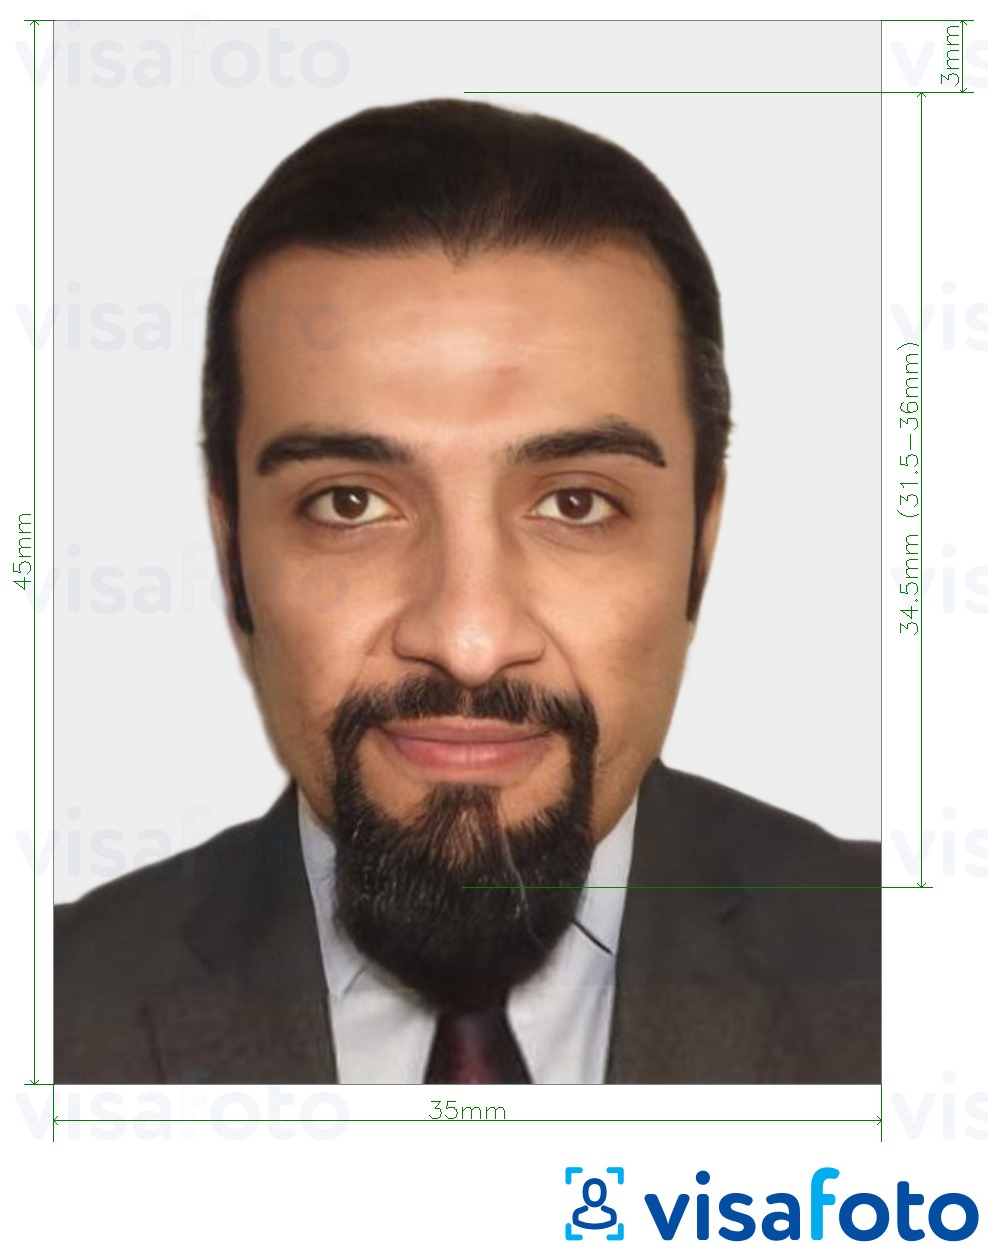 Contoh dari foto untuk Paspor Mauritania 35x45 mm (3,5x4,5 cm) dengan ukuran spesifikasi yang tepat